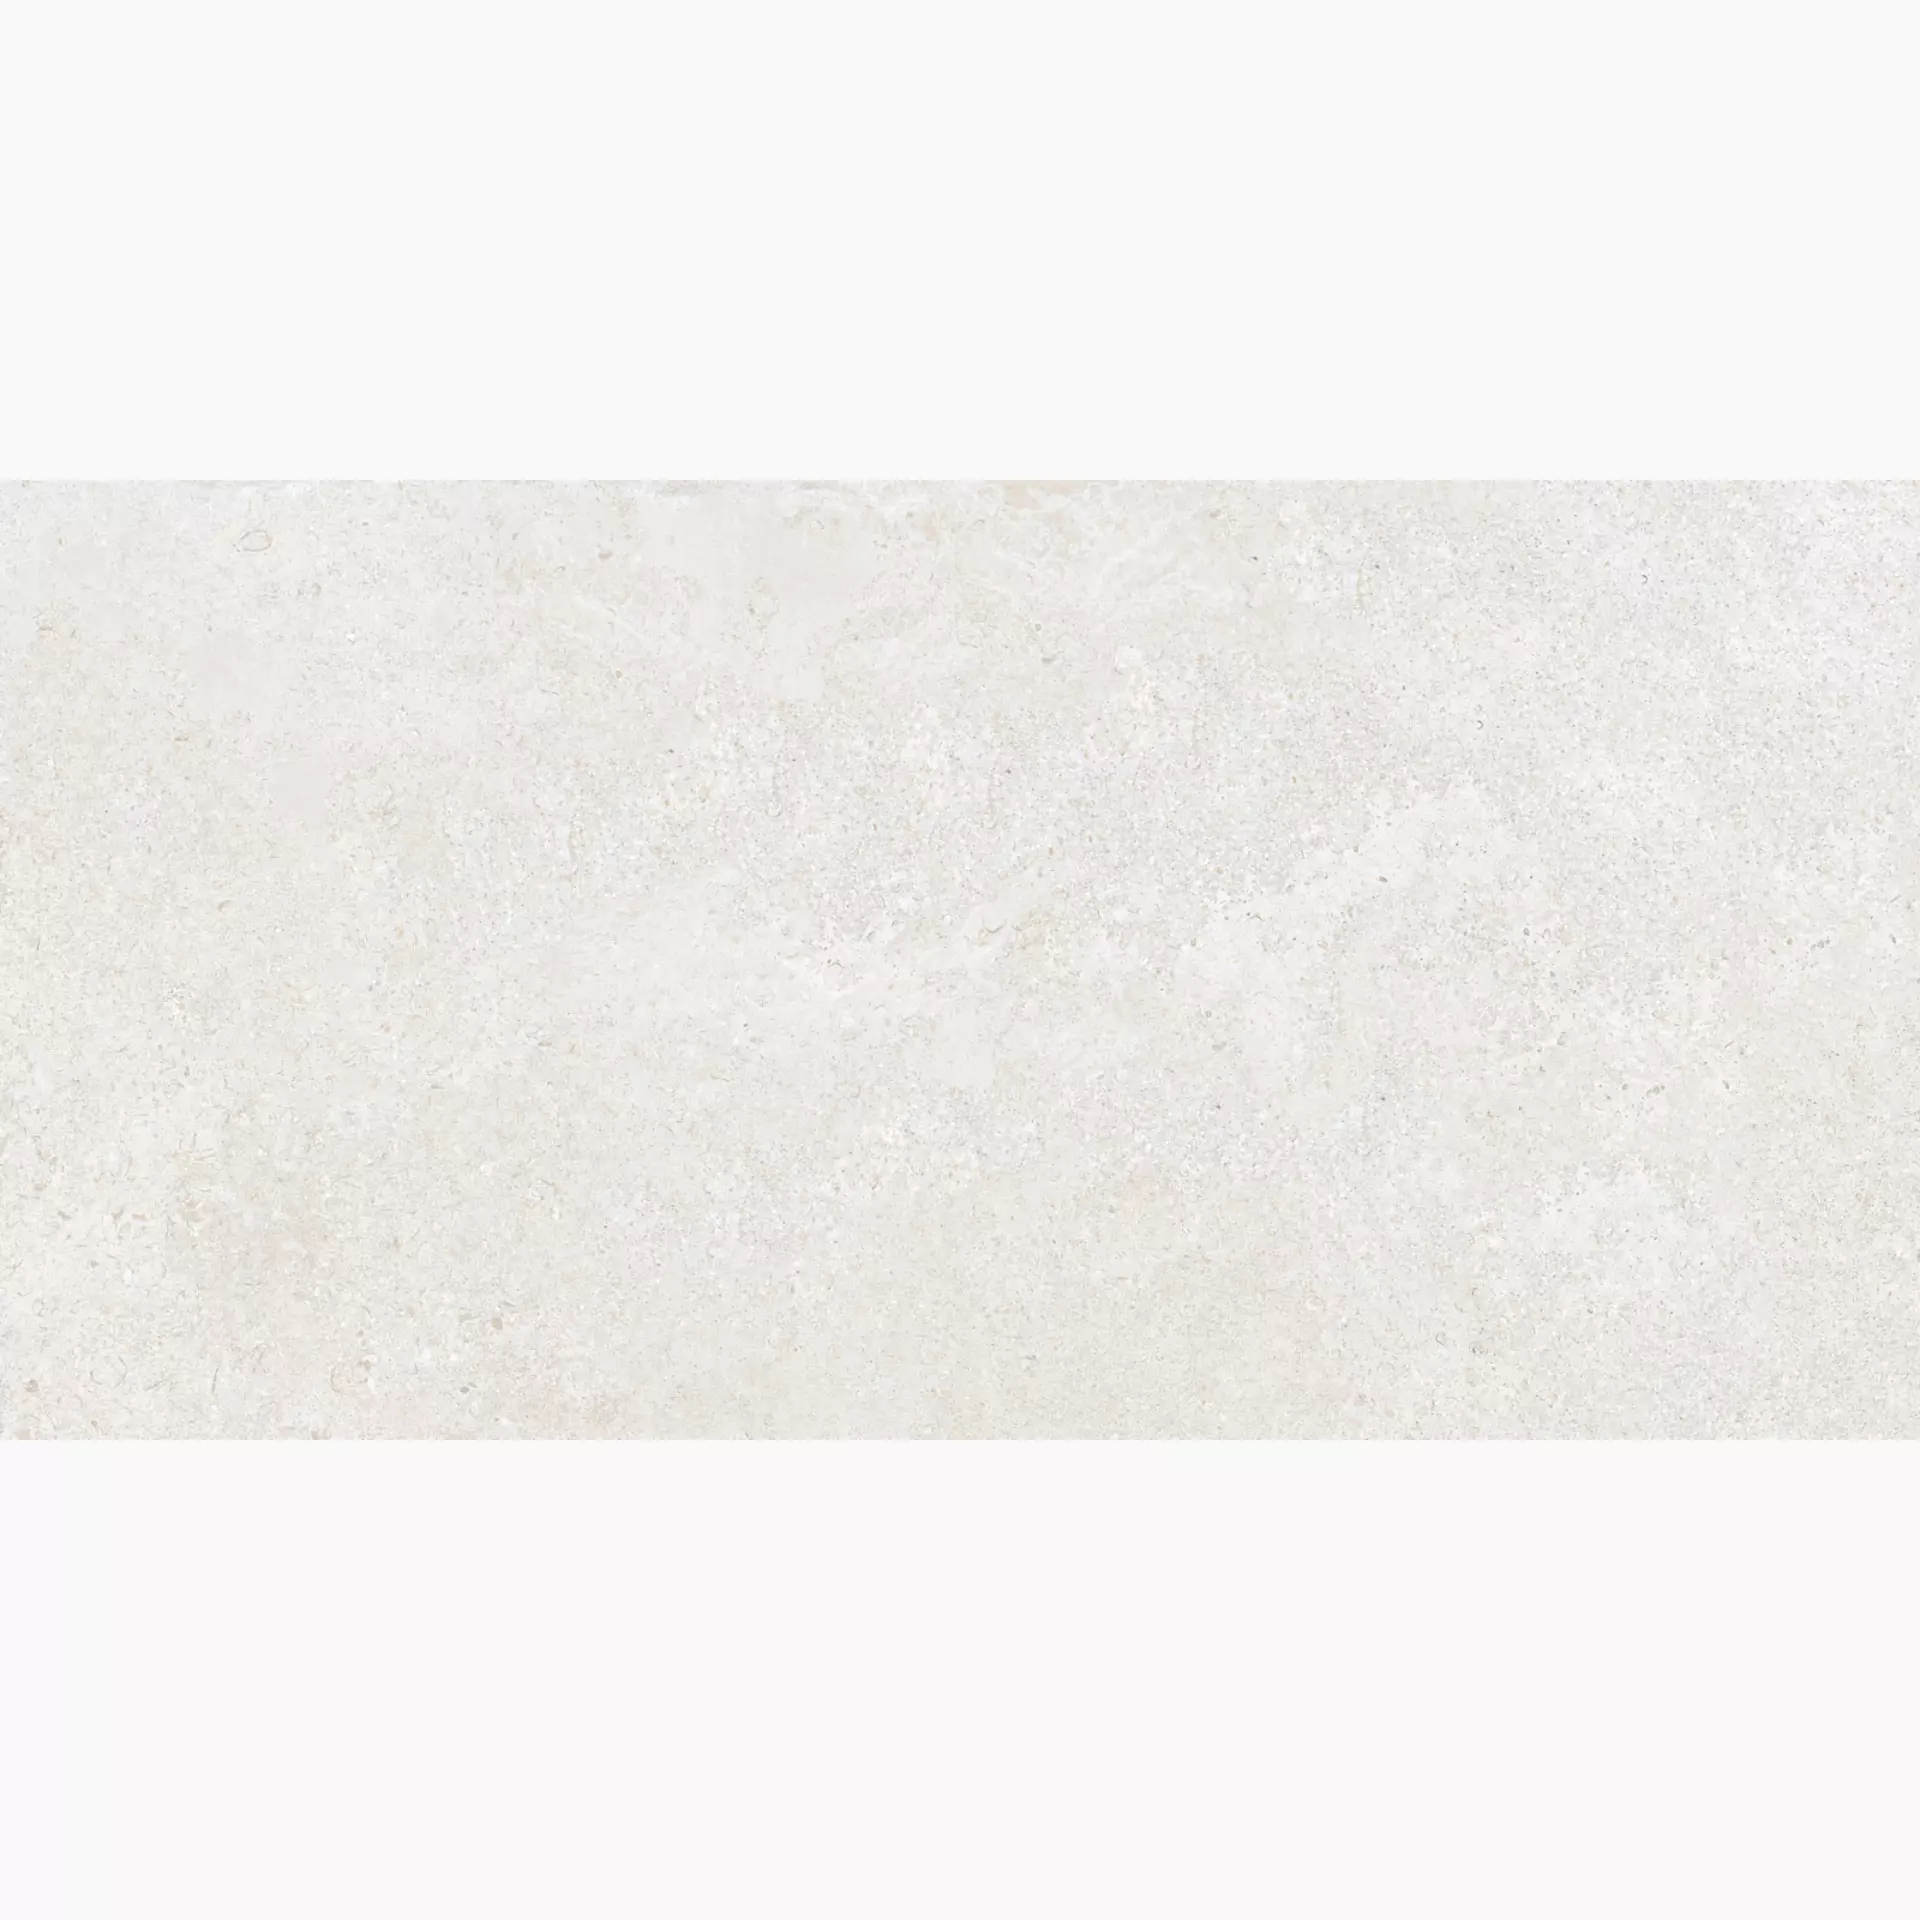 Keope Brystone White Naturale – Matt 44594435 60x120cm rectified 9mm